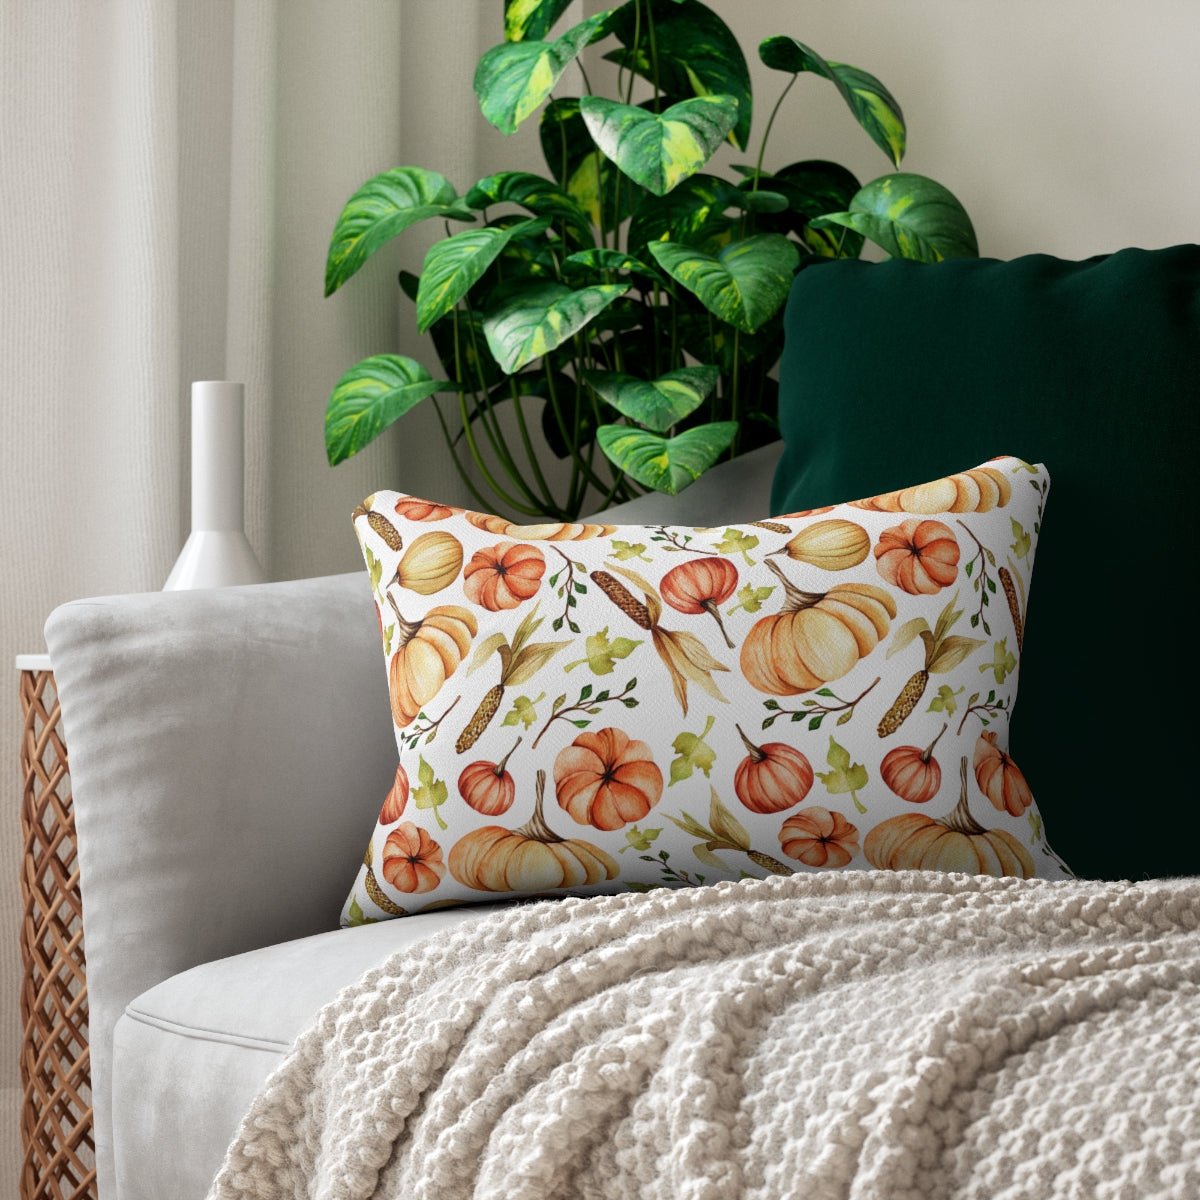 Fall Pumpkins and Corn Spun Polyester Lumbar Pillow - Puffin Lime